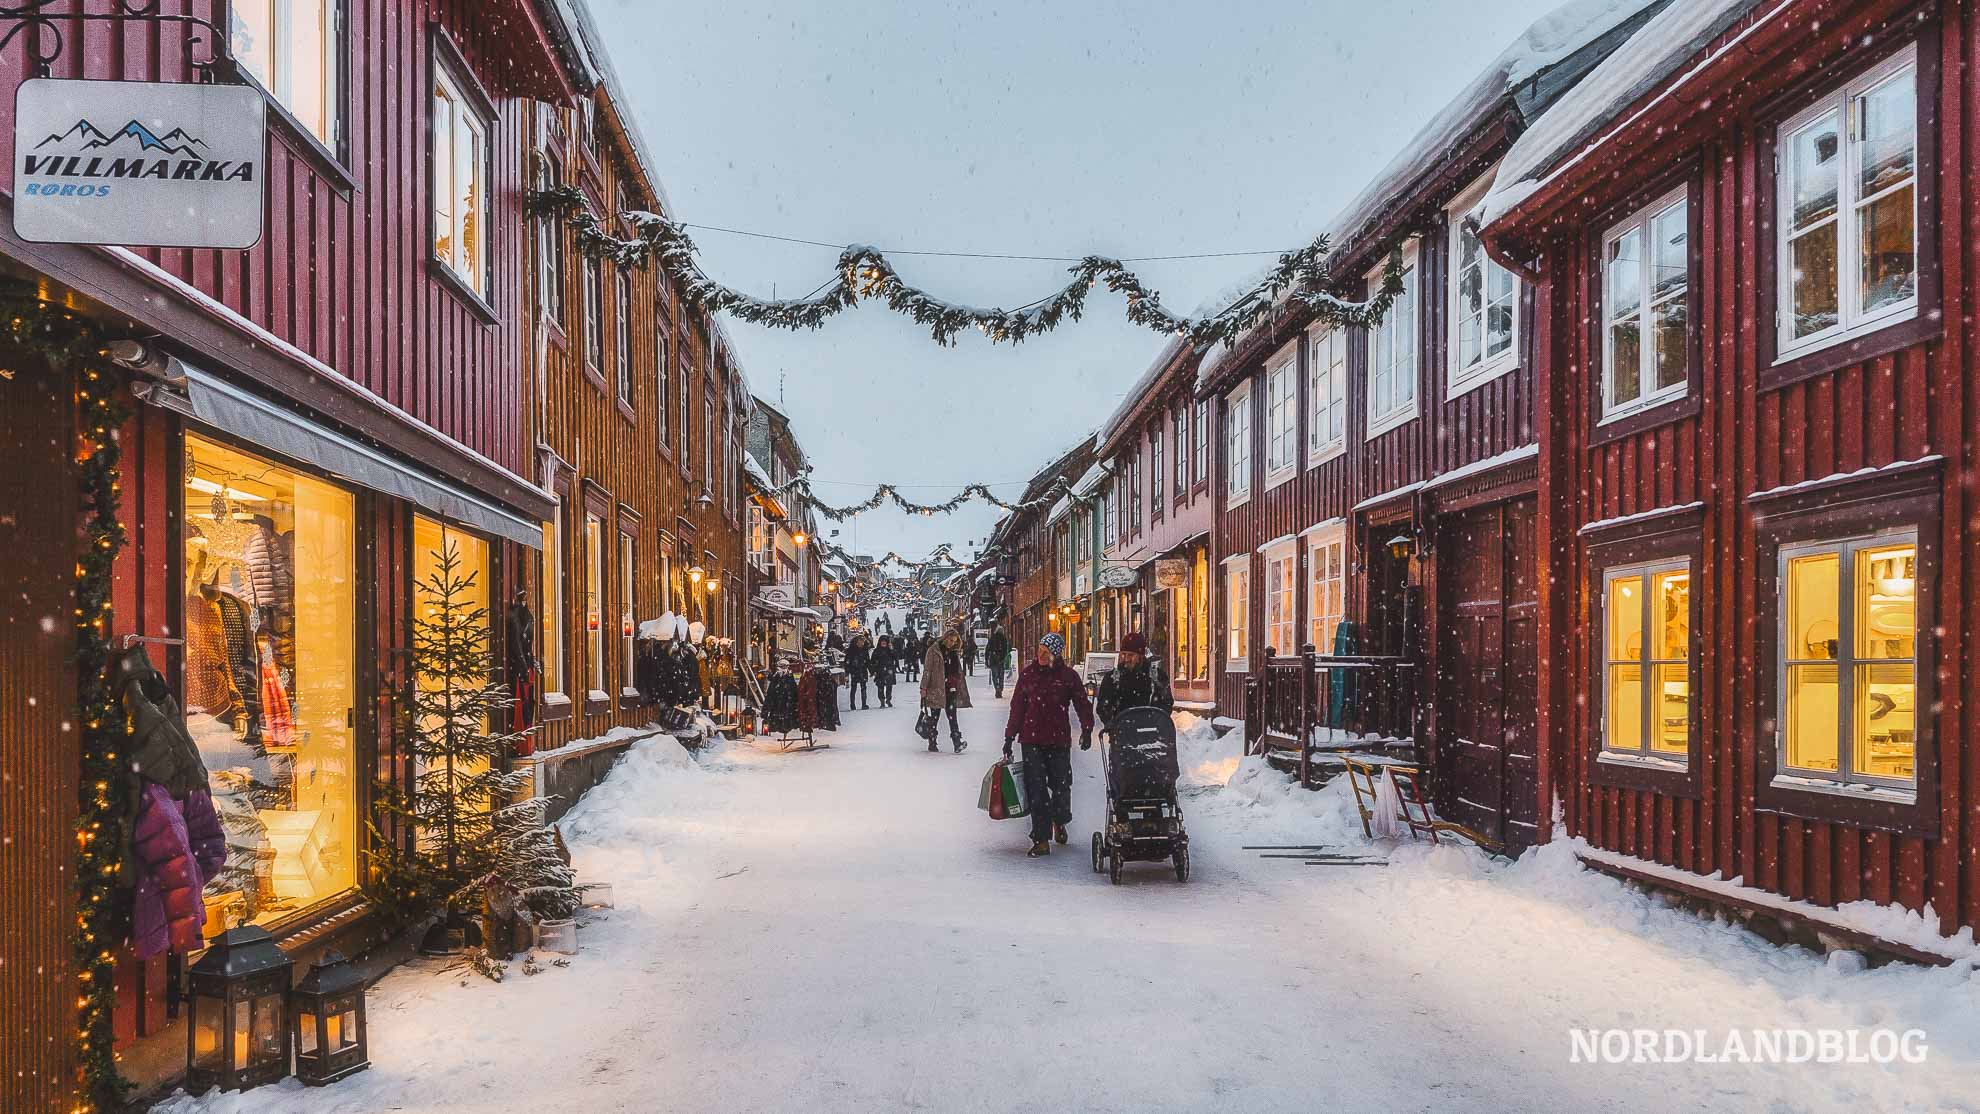 Röros im Winter zur Weihnachtszeit (Weihnachtsgeschichte aus Norwegen)